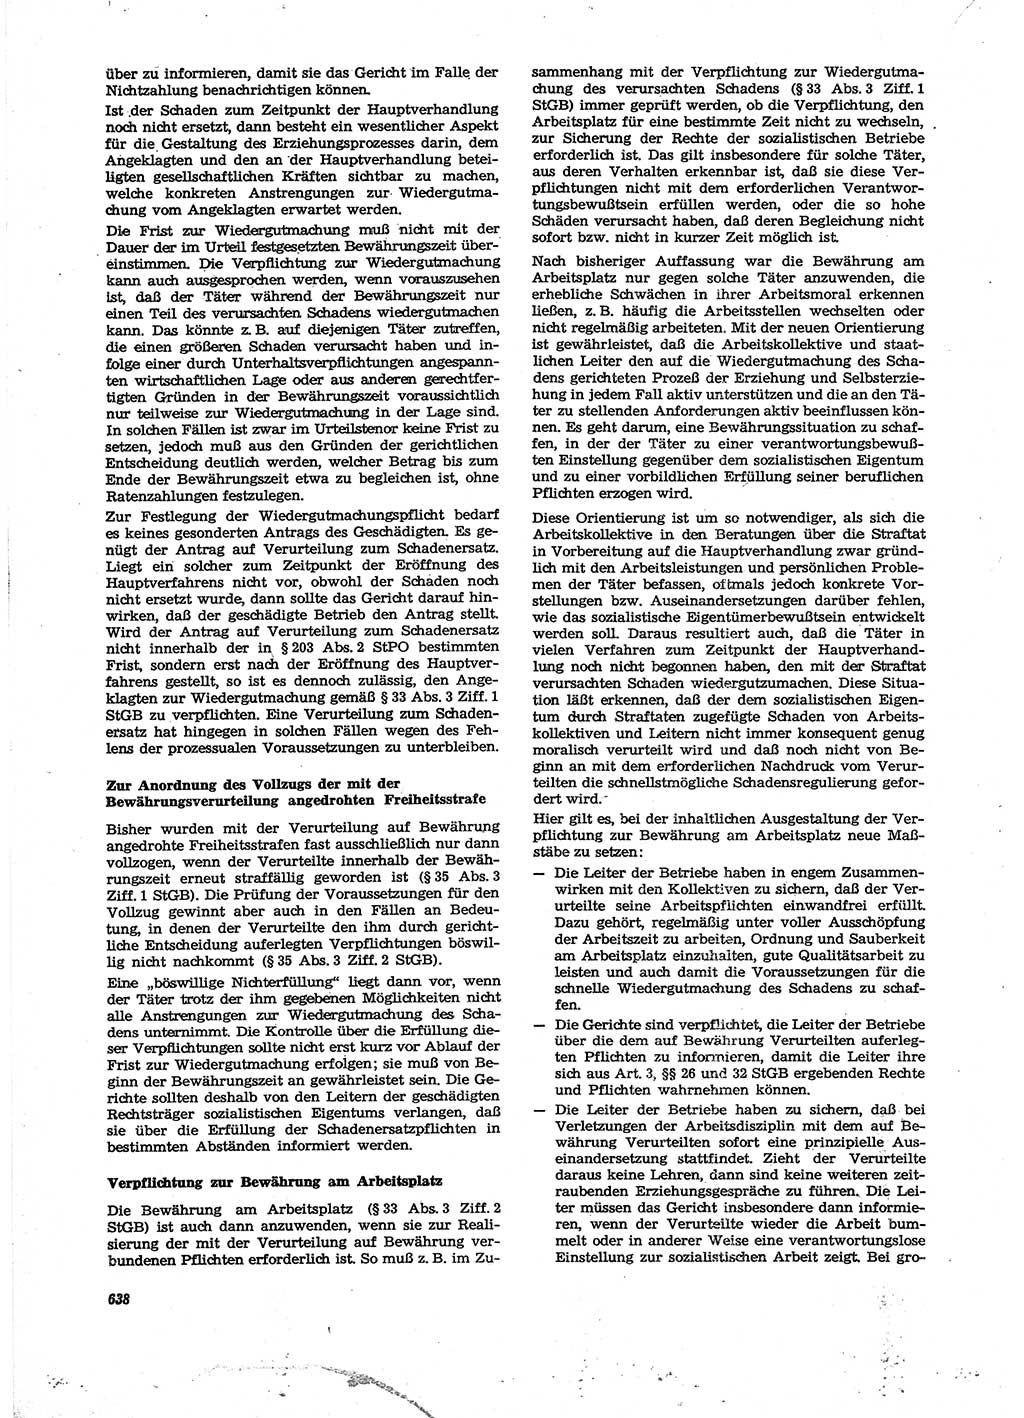 Neue Justiz (NJ), Zeitschrift für Recht und Rechtswissenschaft [Deutsche Demokratische Republik (DDR)], 27. Jahrgang 1973, Seite 638 (NJ DDR 1973, S. 638)